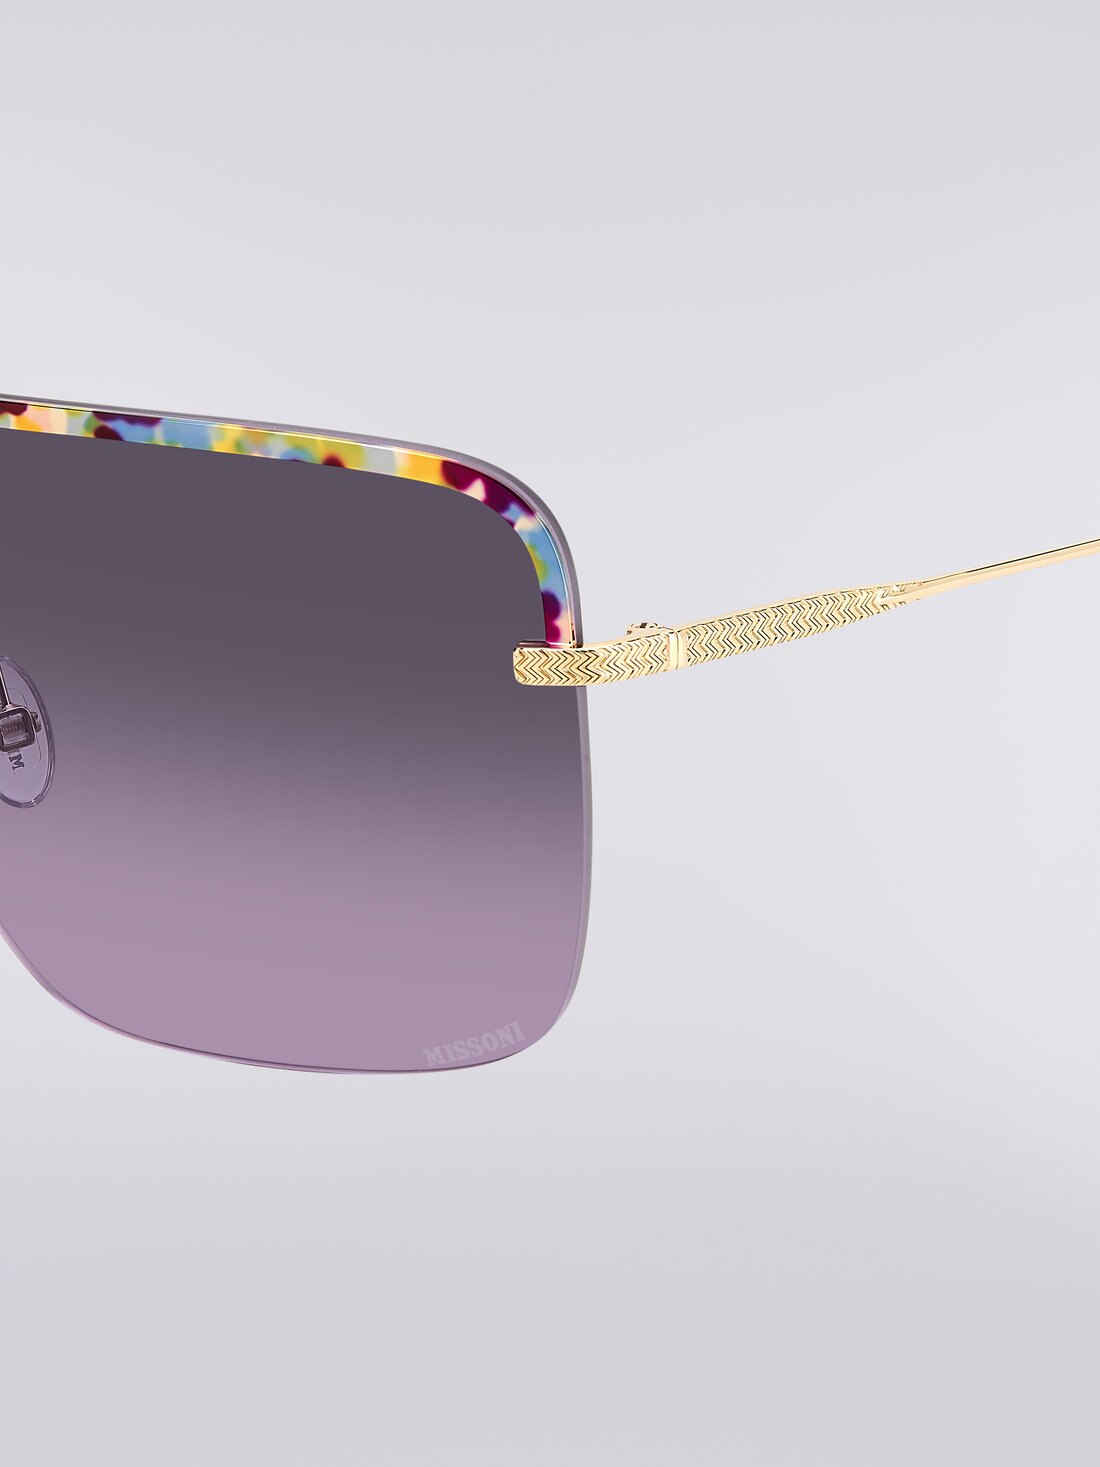 Missoni Seasonal Metal Sunglasses, Multicoloured  - 8051575840227 - 3